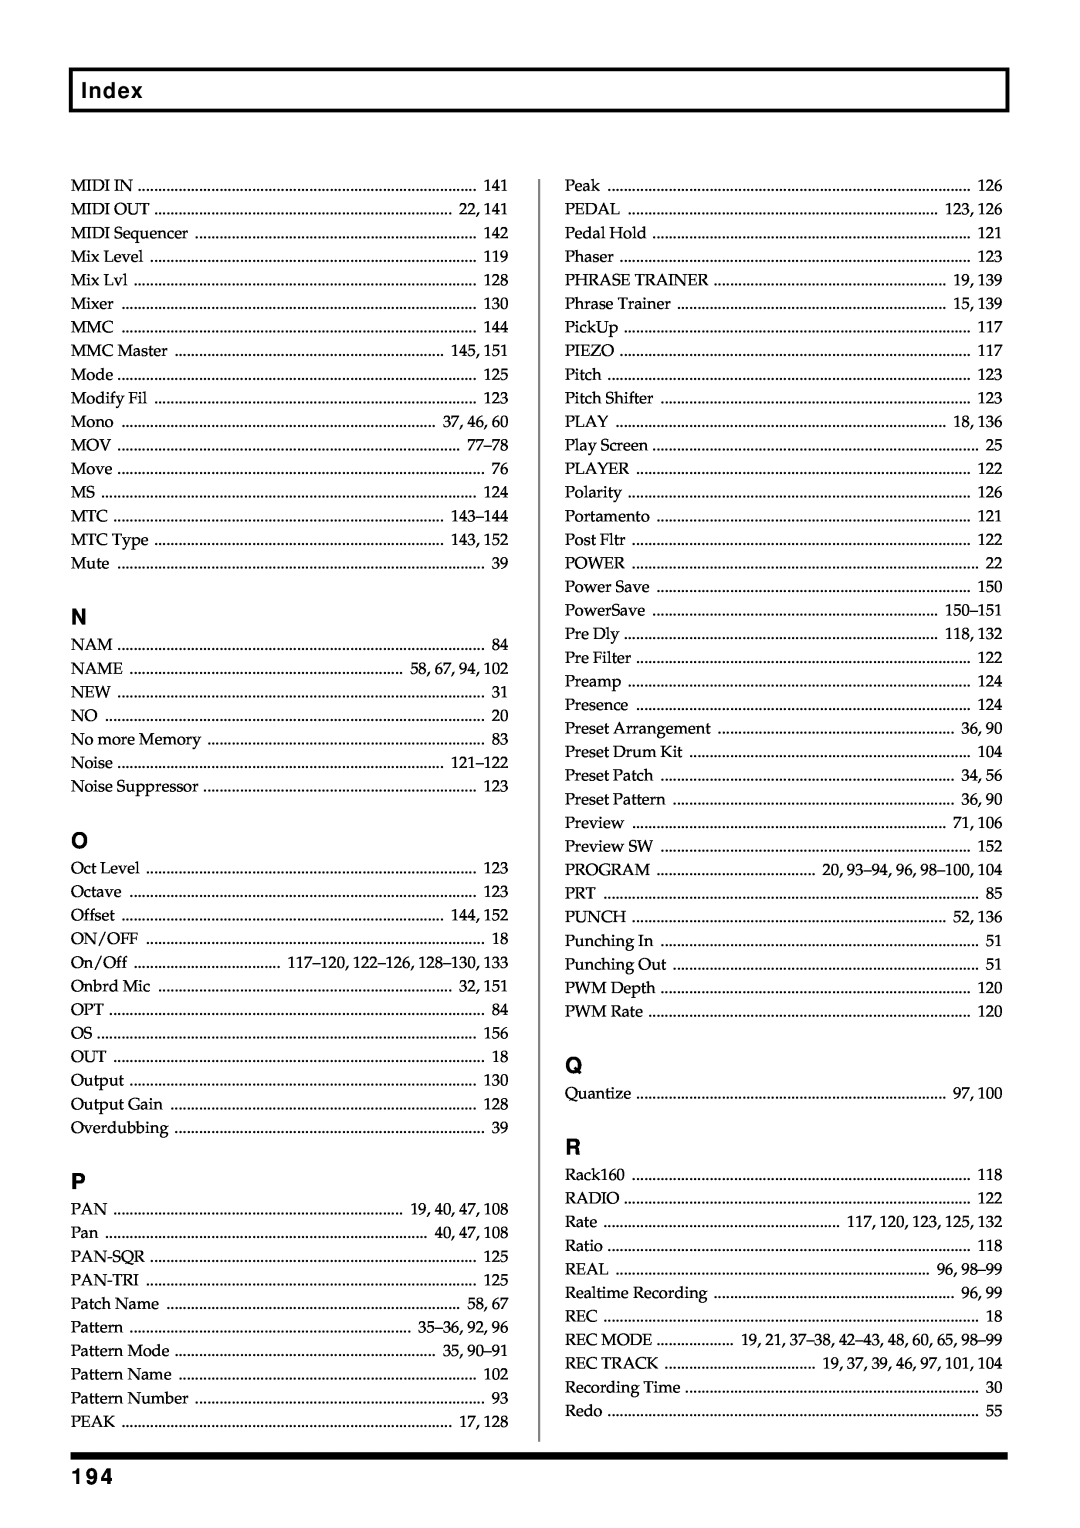 Roland BR-864 owner manual Index 